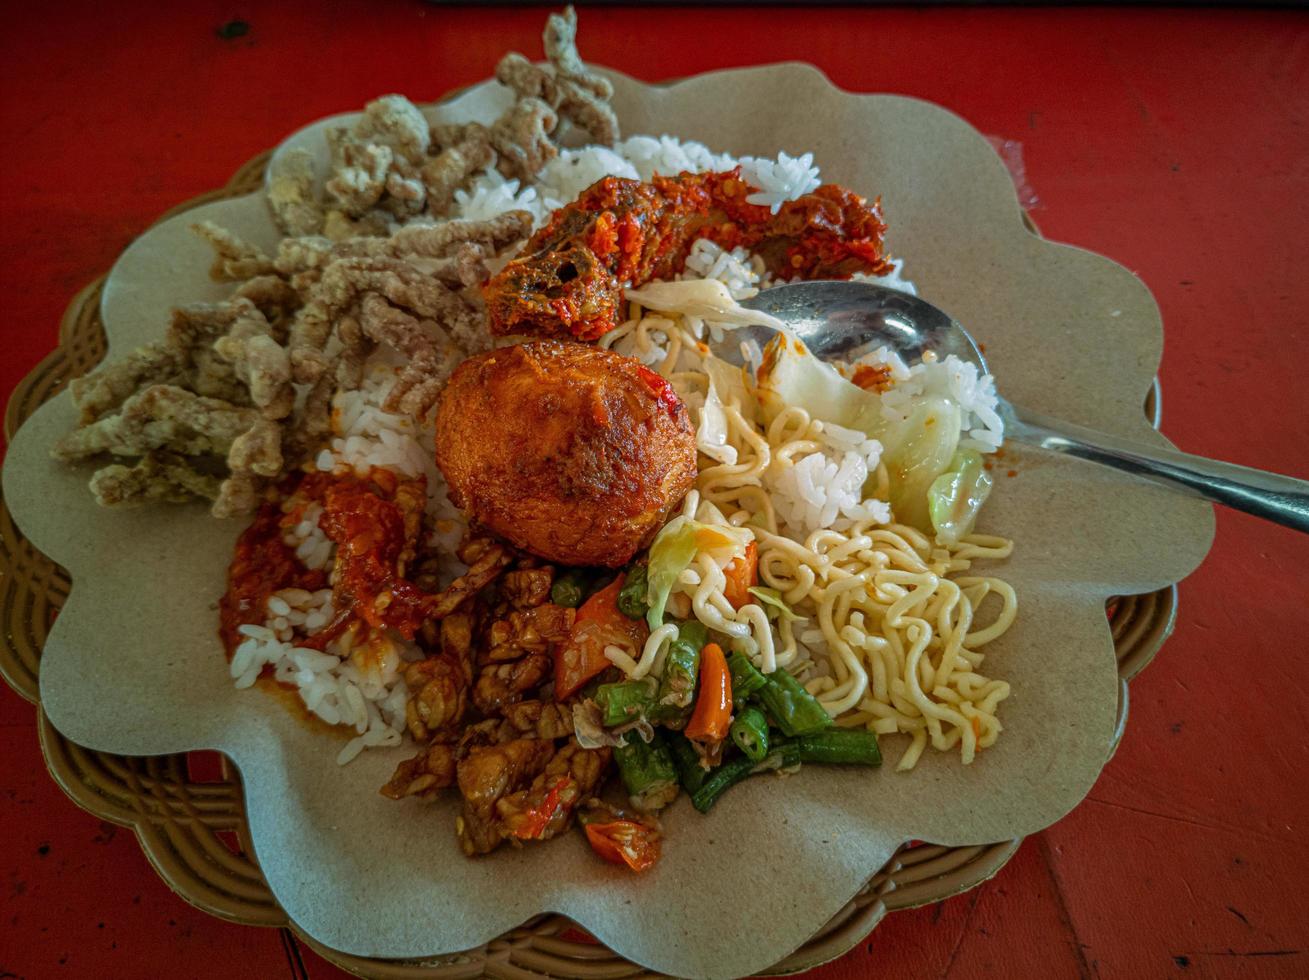 arroz mezclado. una popular comida de arroz de especialidad indonesia con varias guarniciones servidas con arroz y otras adiciones opcionales. foto